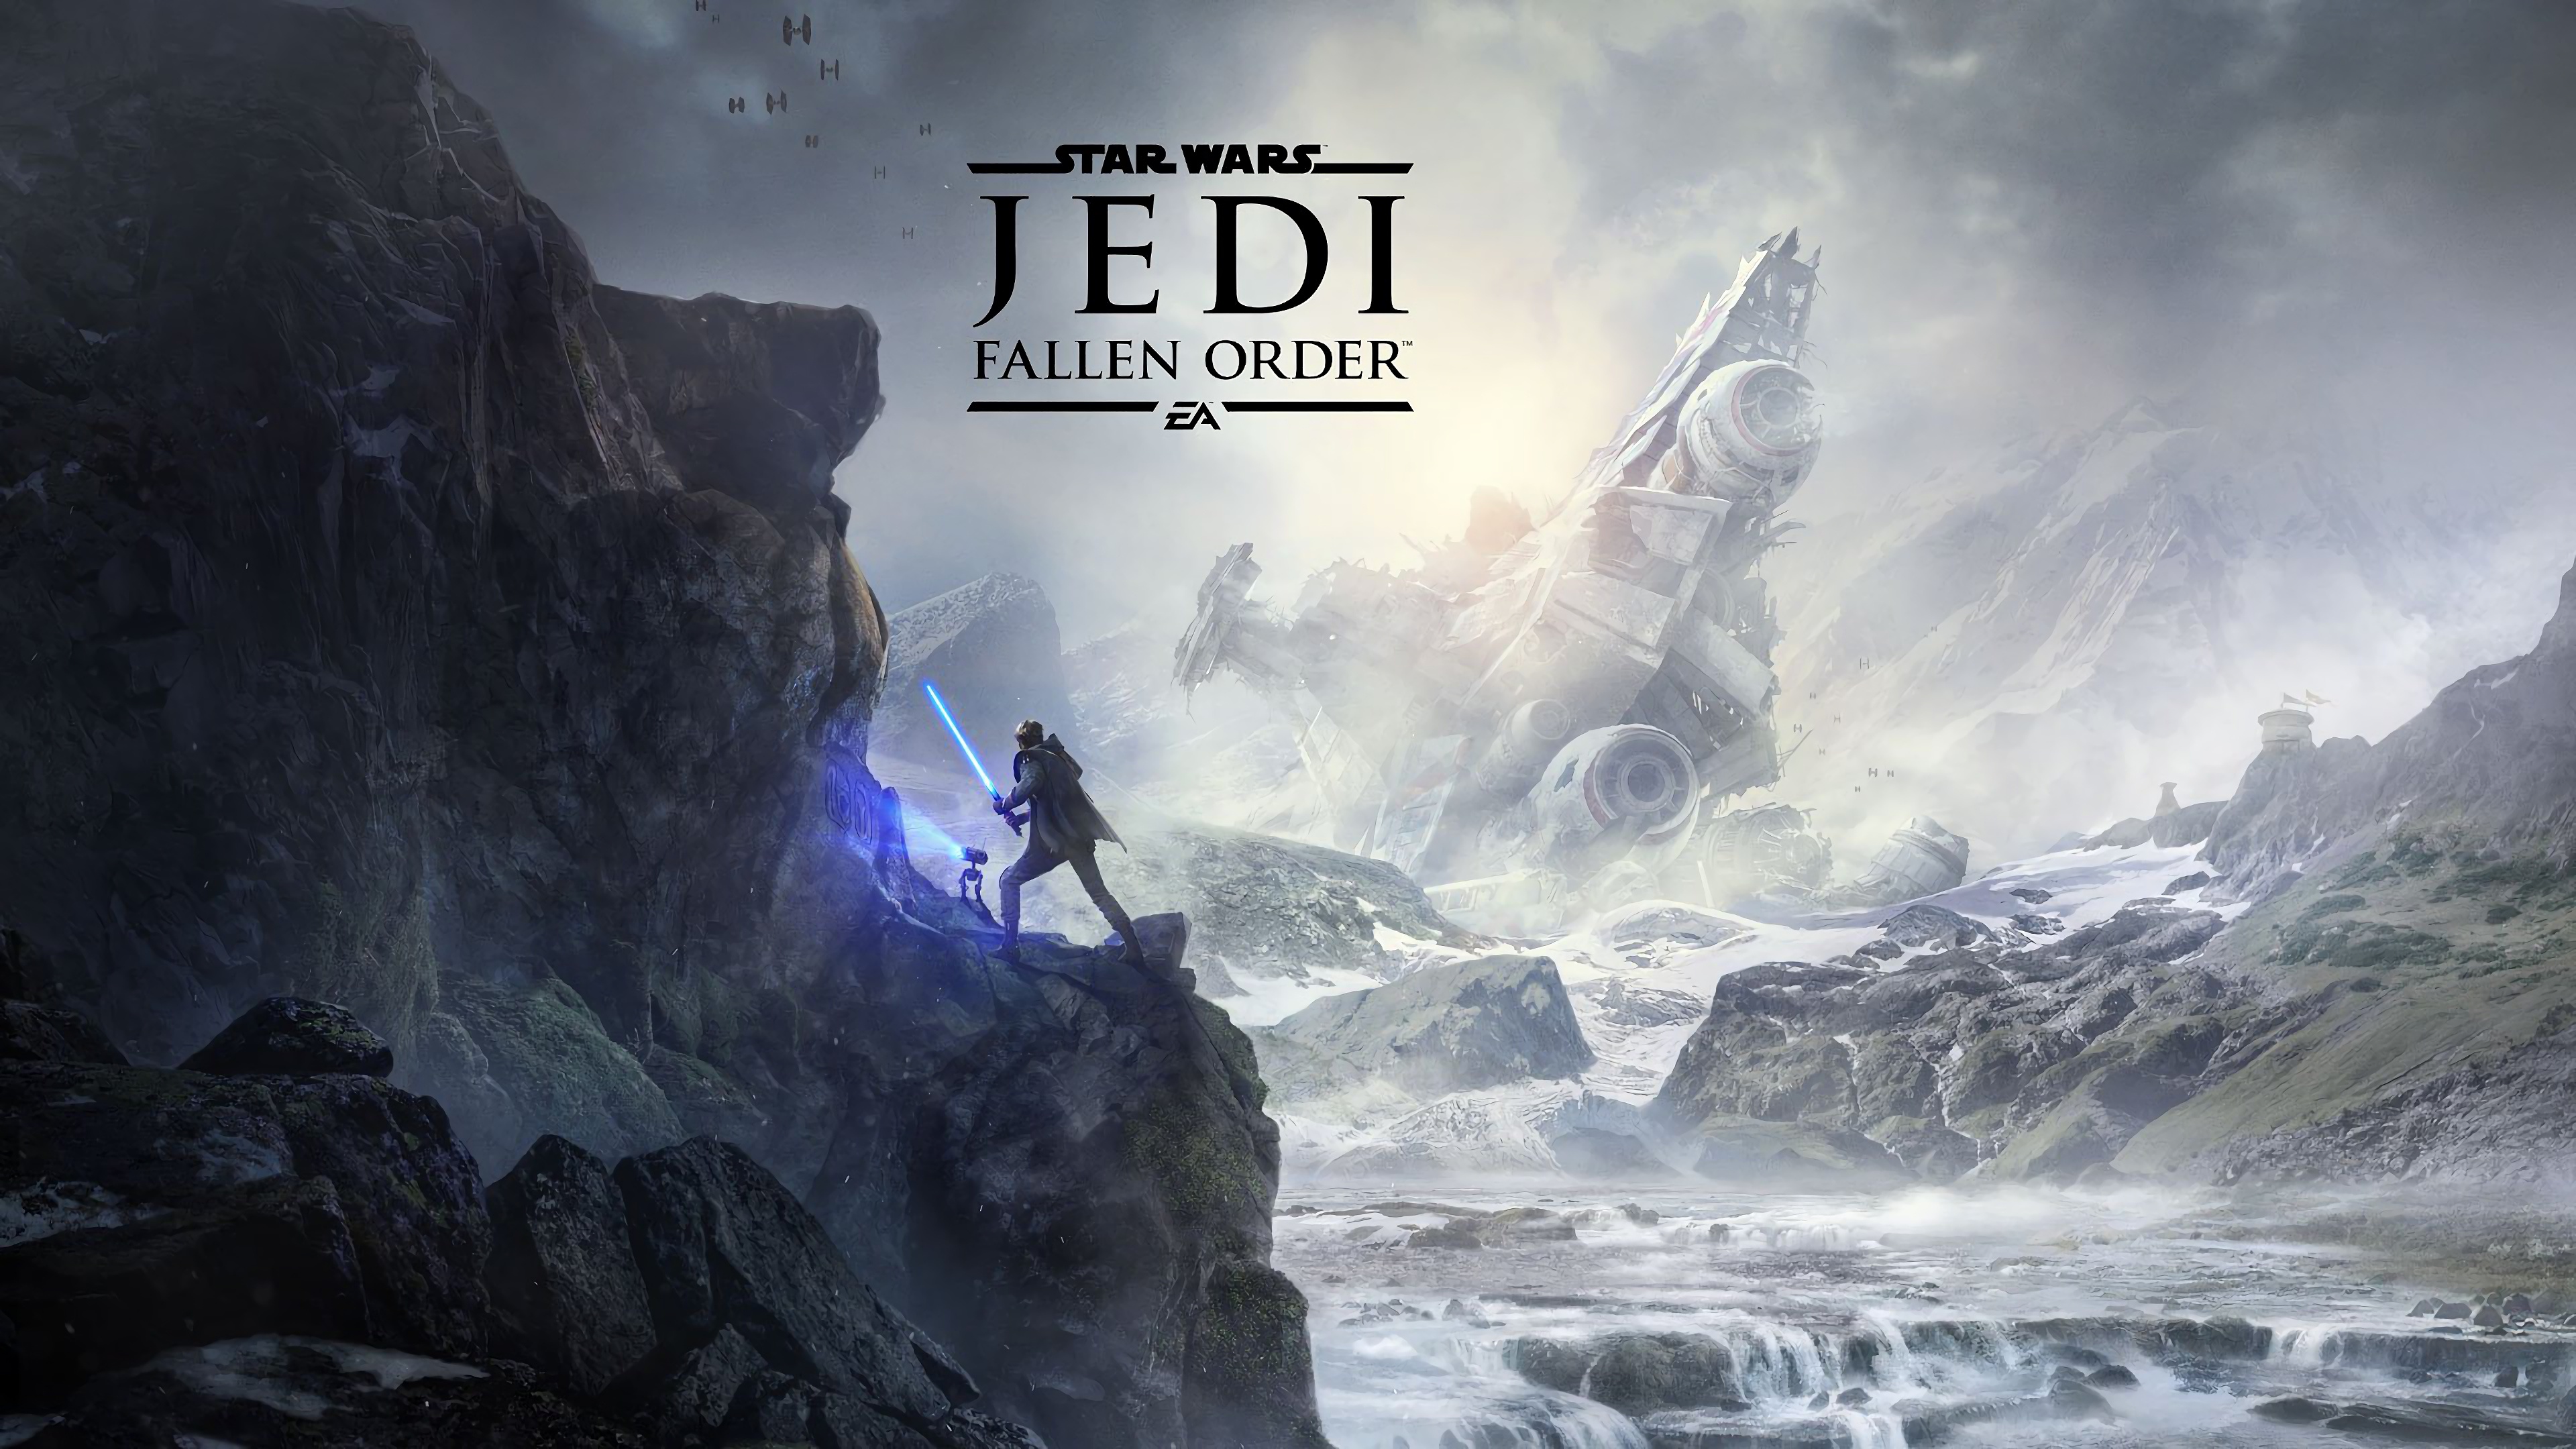 壁紙 3840x2160 スター ウォーズ Star Wars Jedi Fallen Order 岩 ゲーム ダウンロード 写真